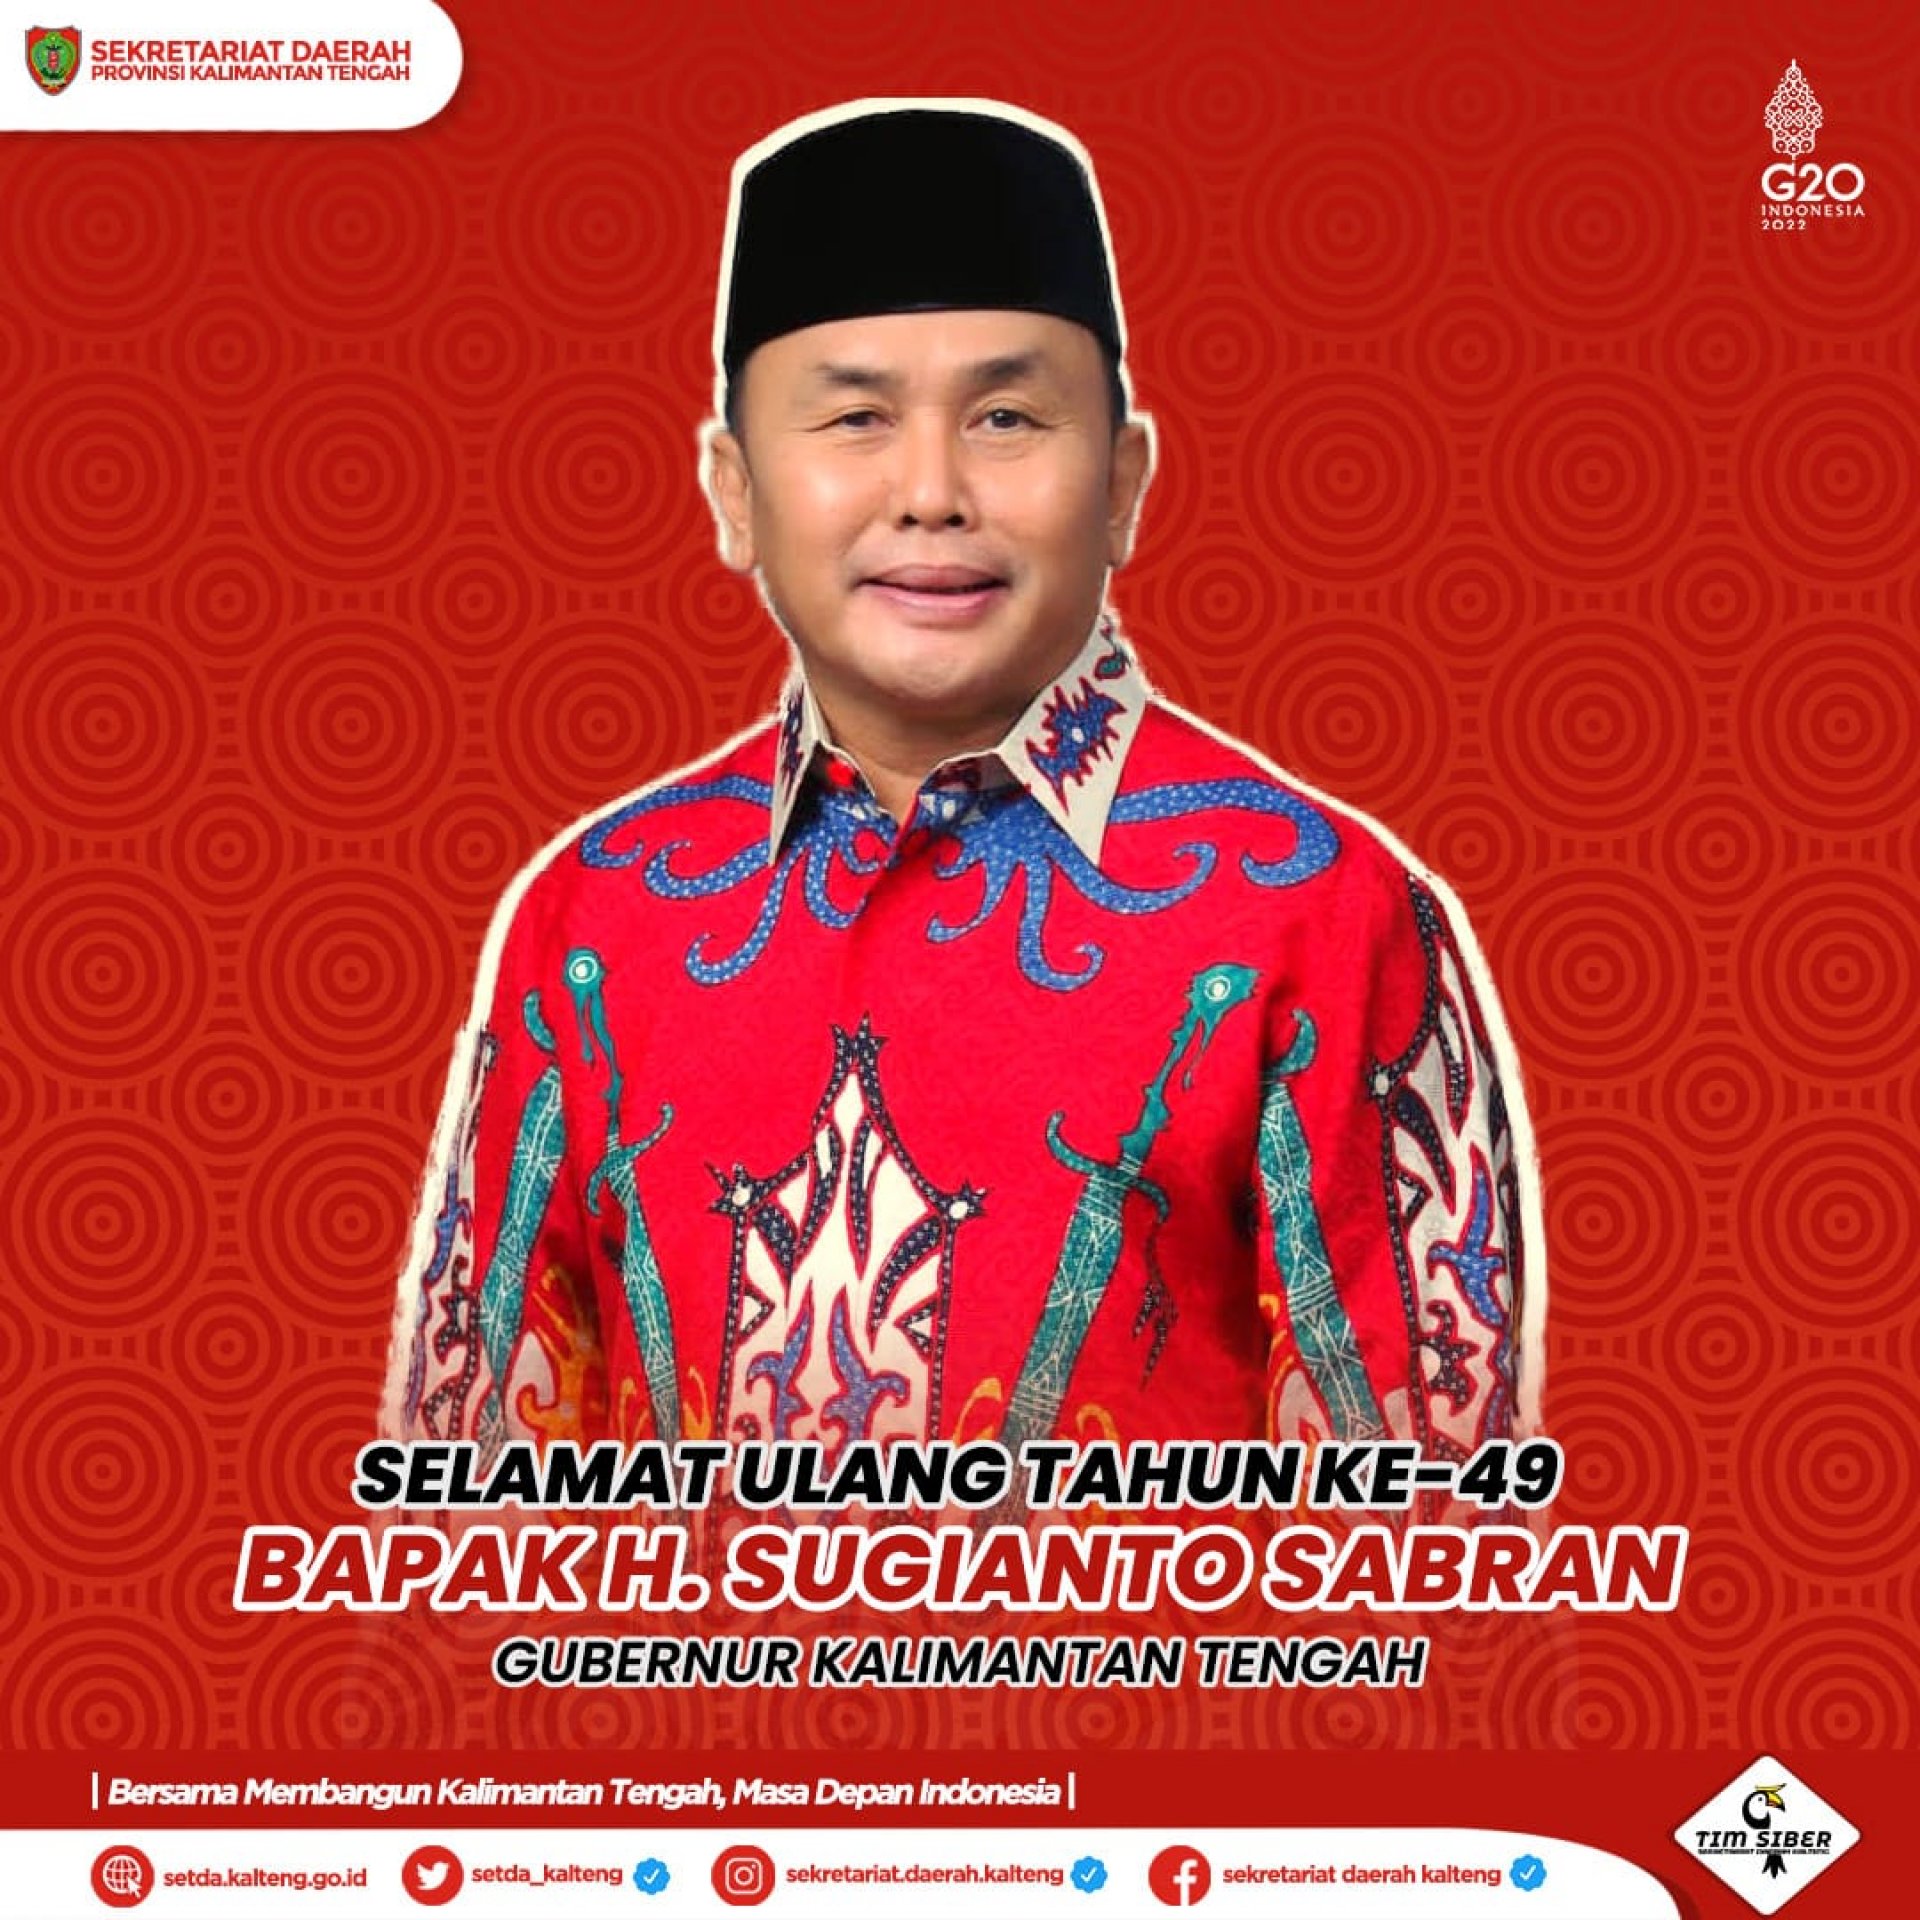 Selamat Ulang Tahun ke-49 Bapak Gubernur Sugianto Sabran